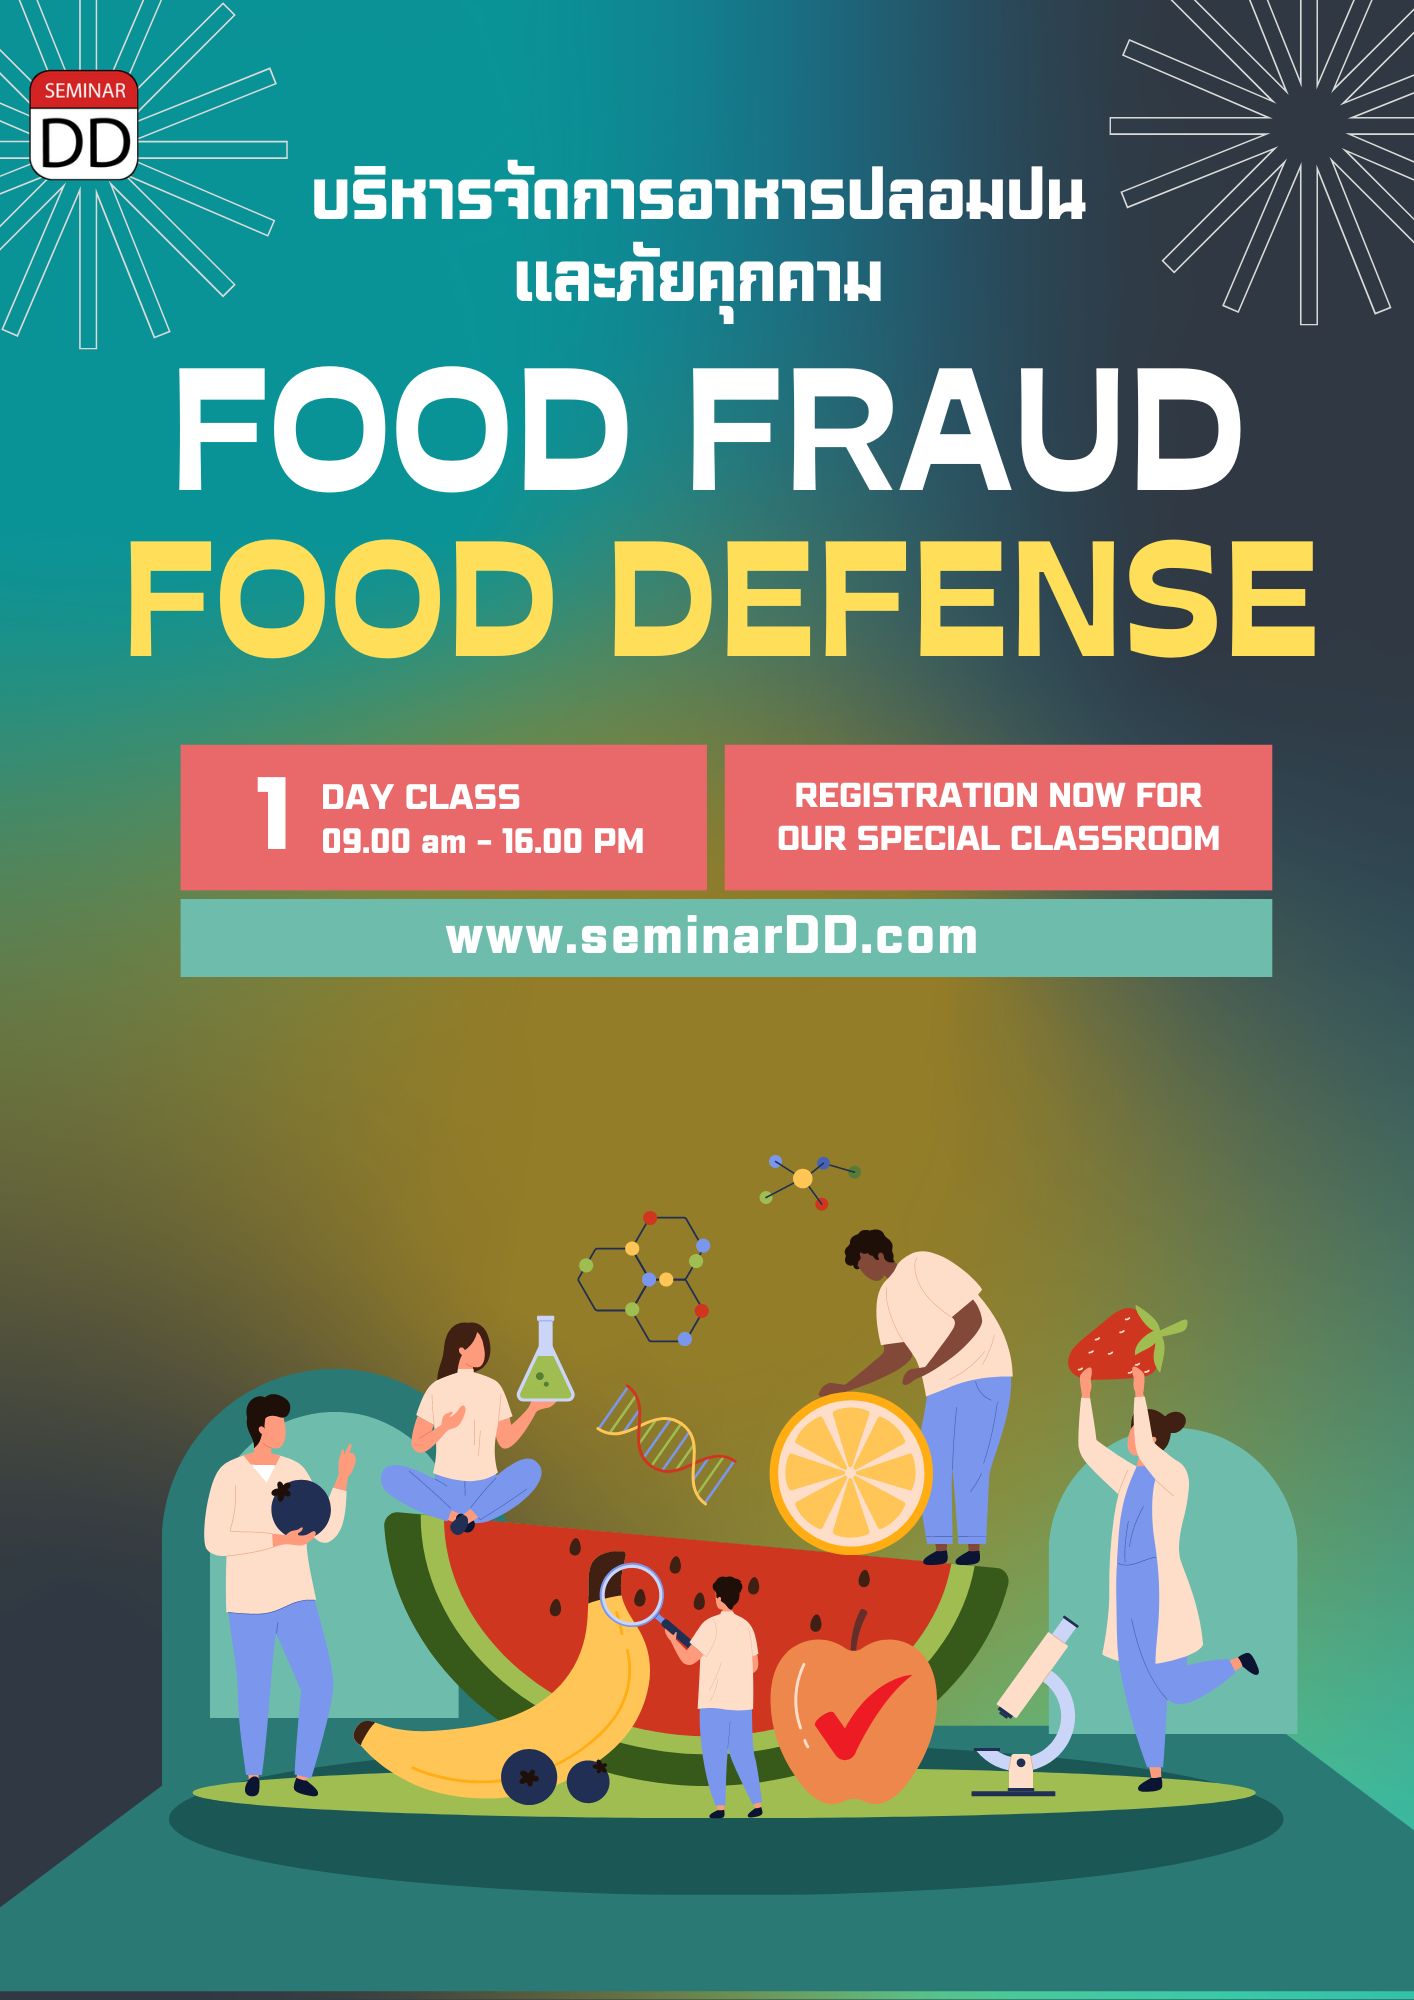 หลักสูตร การบริหารจัดการอาหารปลอมปน  (Food Fraud) และภัยคุกคาม (Food Defense)